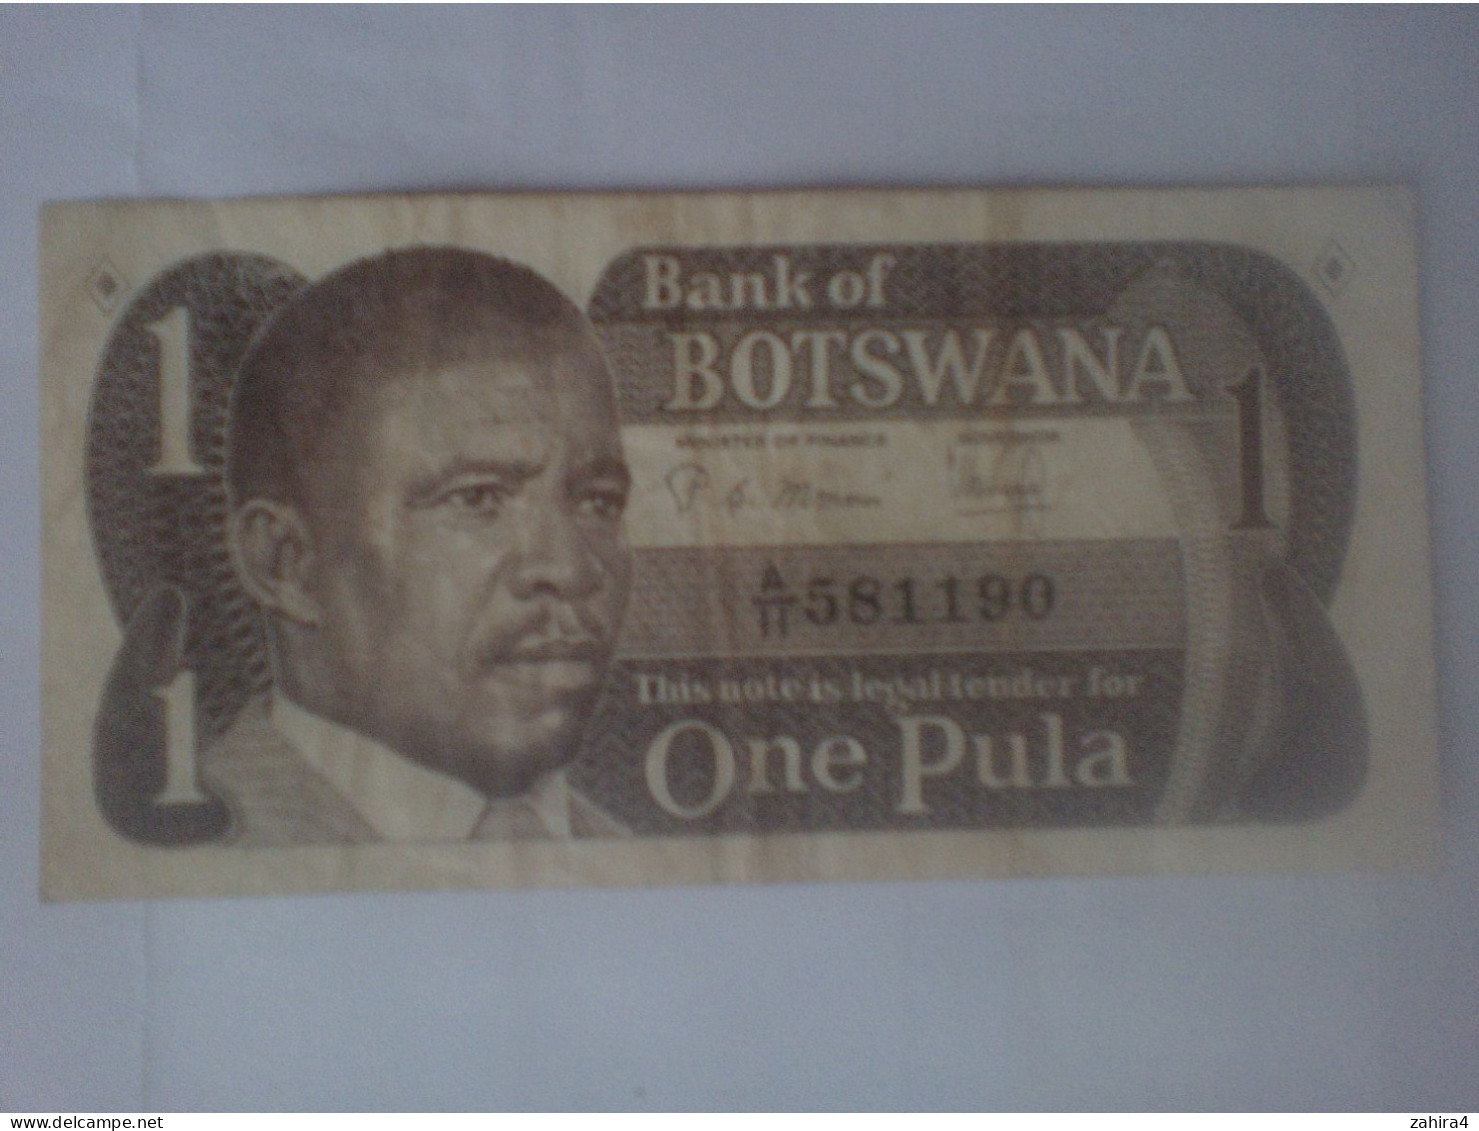 Bank Of Botswana 1 - One Pula A/II 581190 - Lemang Dijo - Botswana